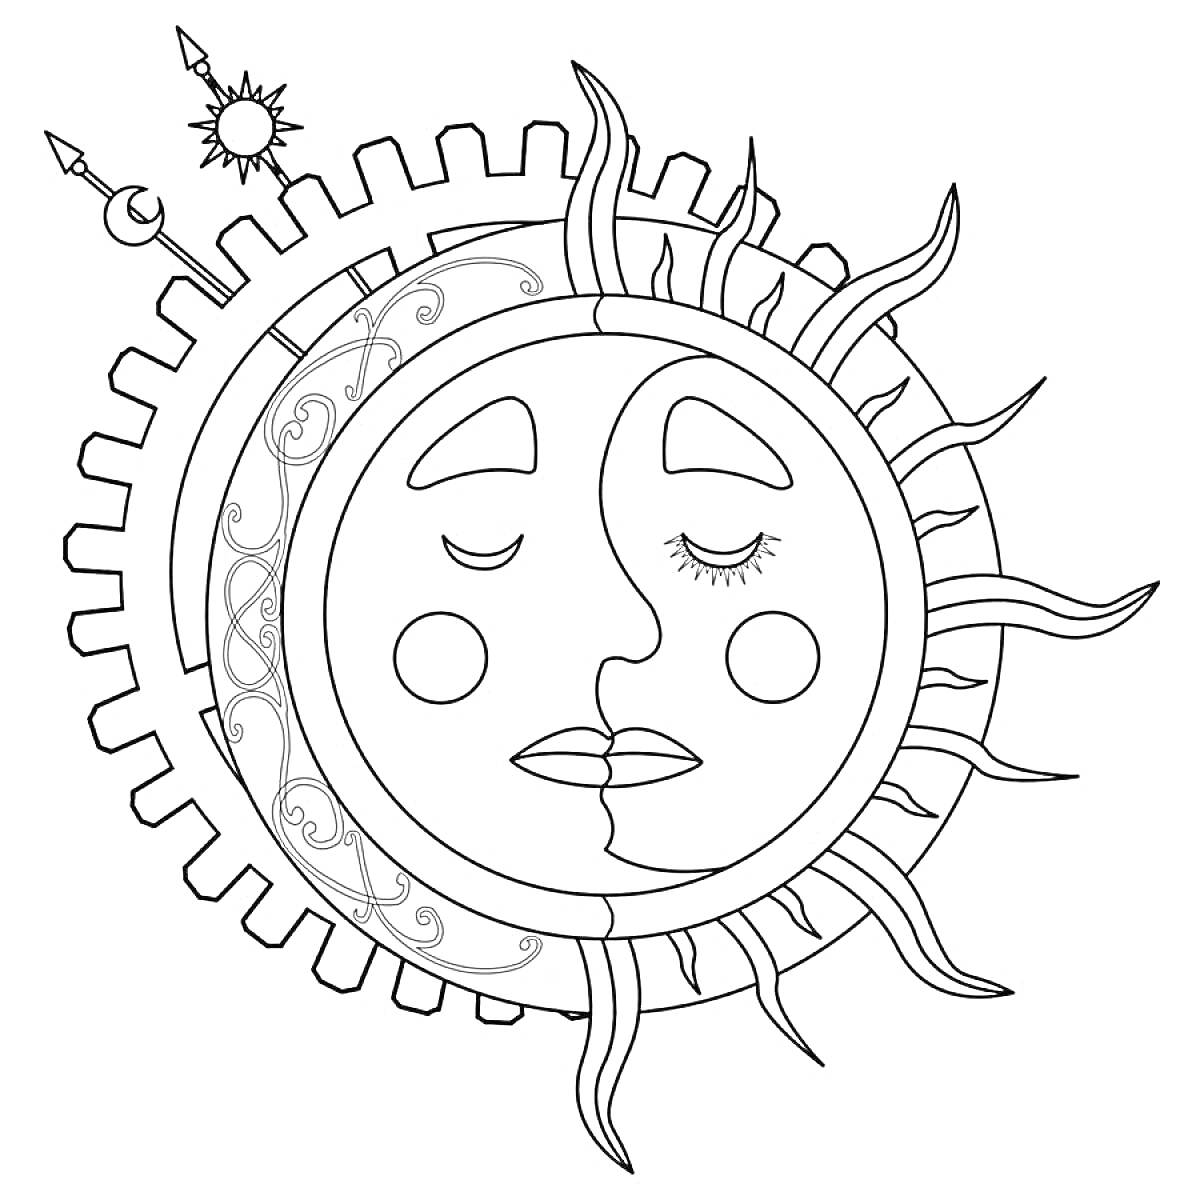 Раскраска Луна и солнце в одном круге с зубчатыми краями и узорами